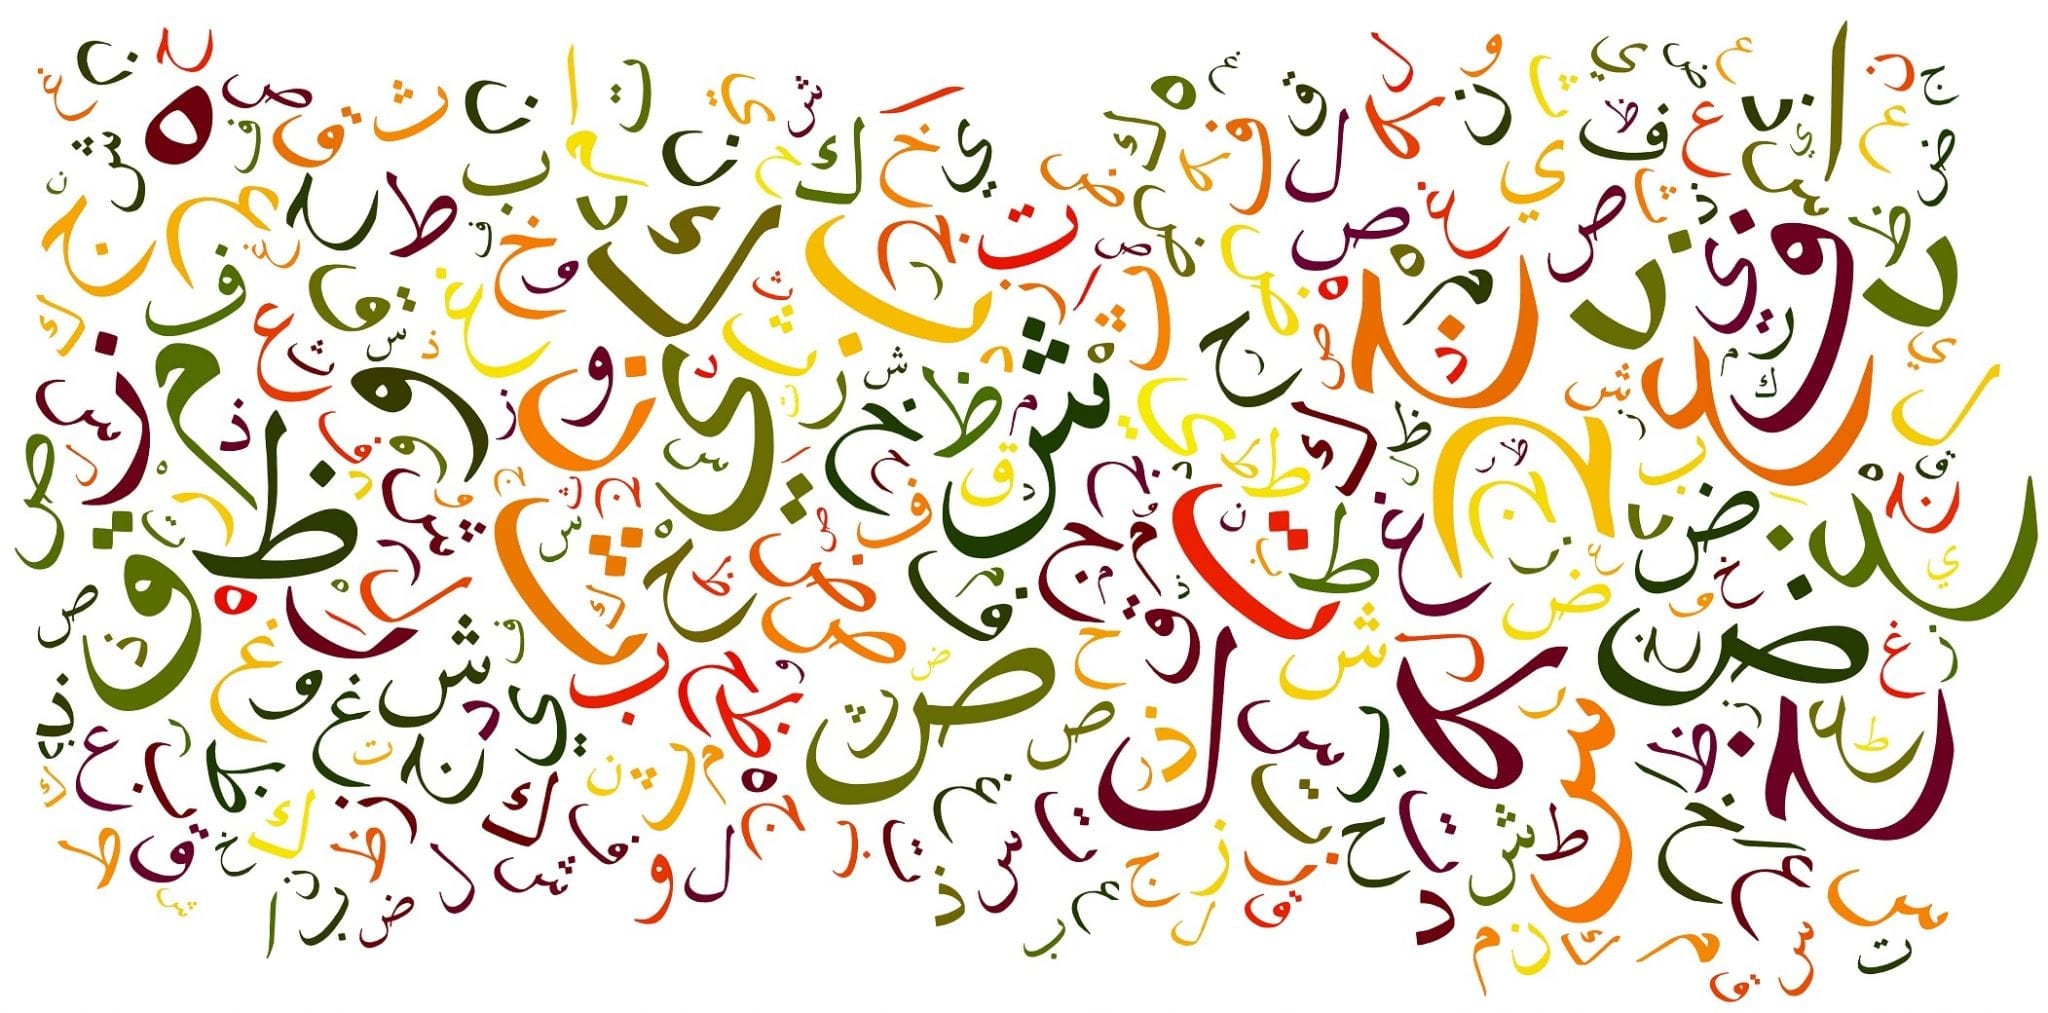 אותיות בערבית מילון ערבית מדוברת מילון ערבי עברי